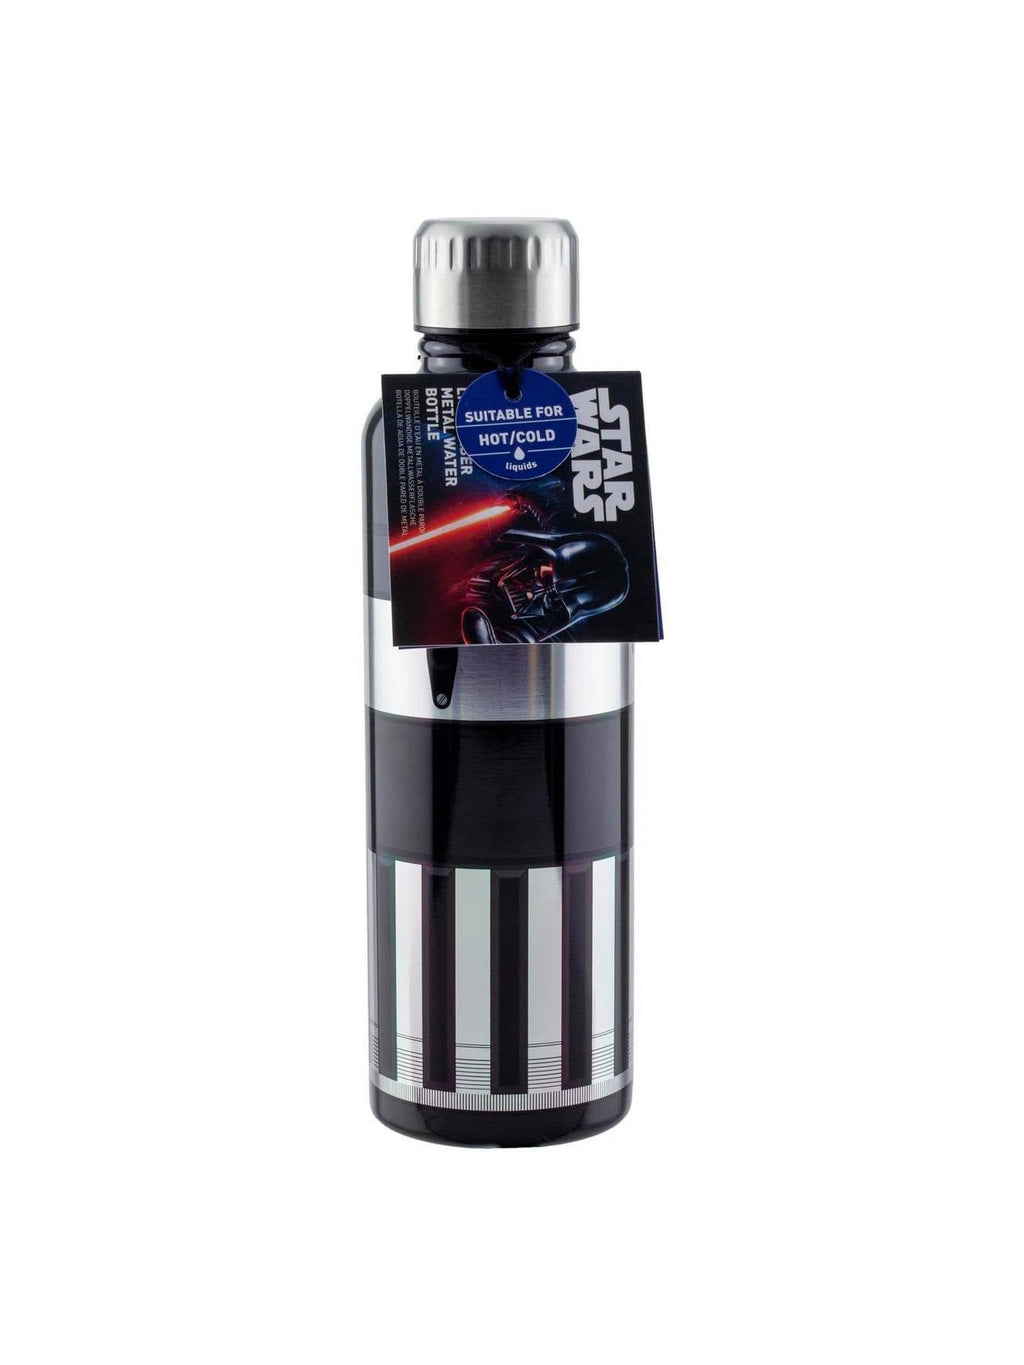 Star Wars Darth Vader Stainless Steel Water Bottle, 16 oz.